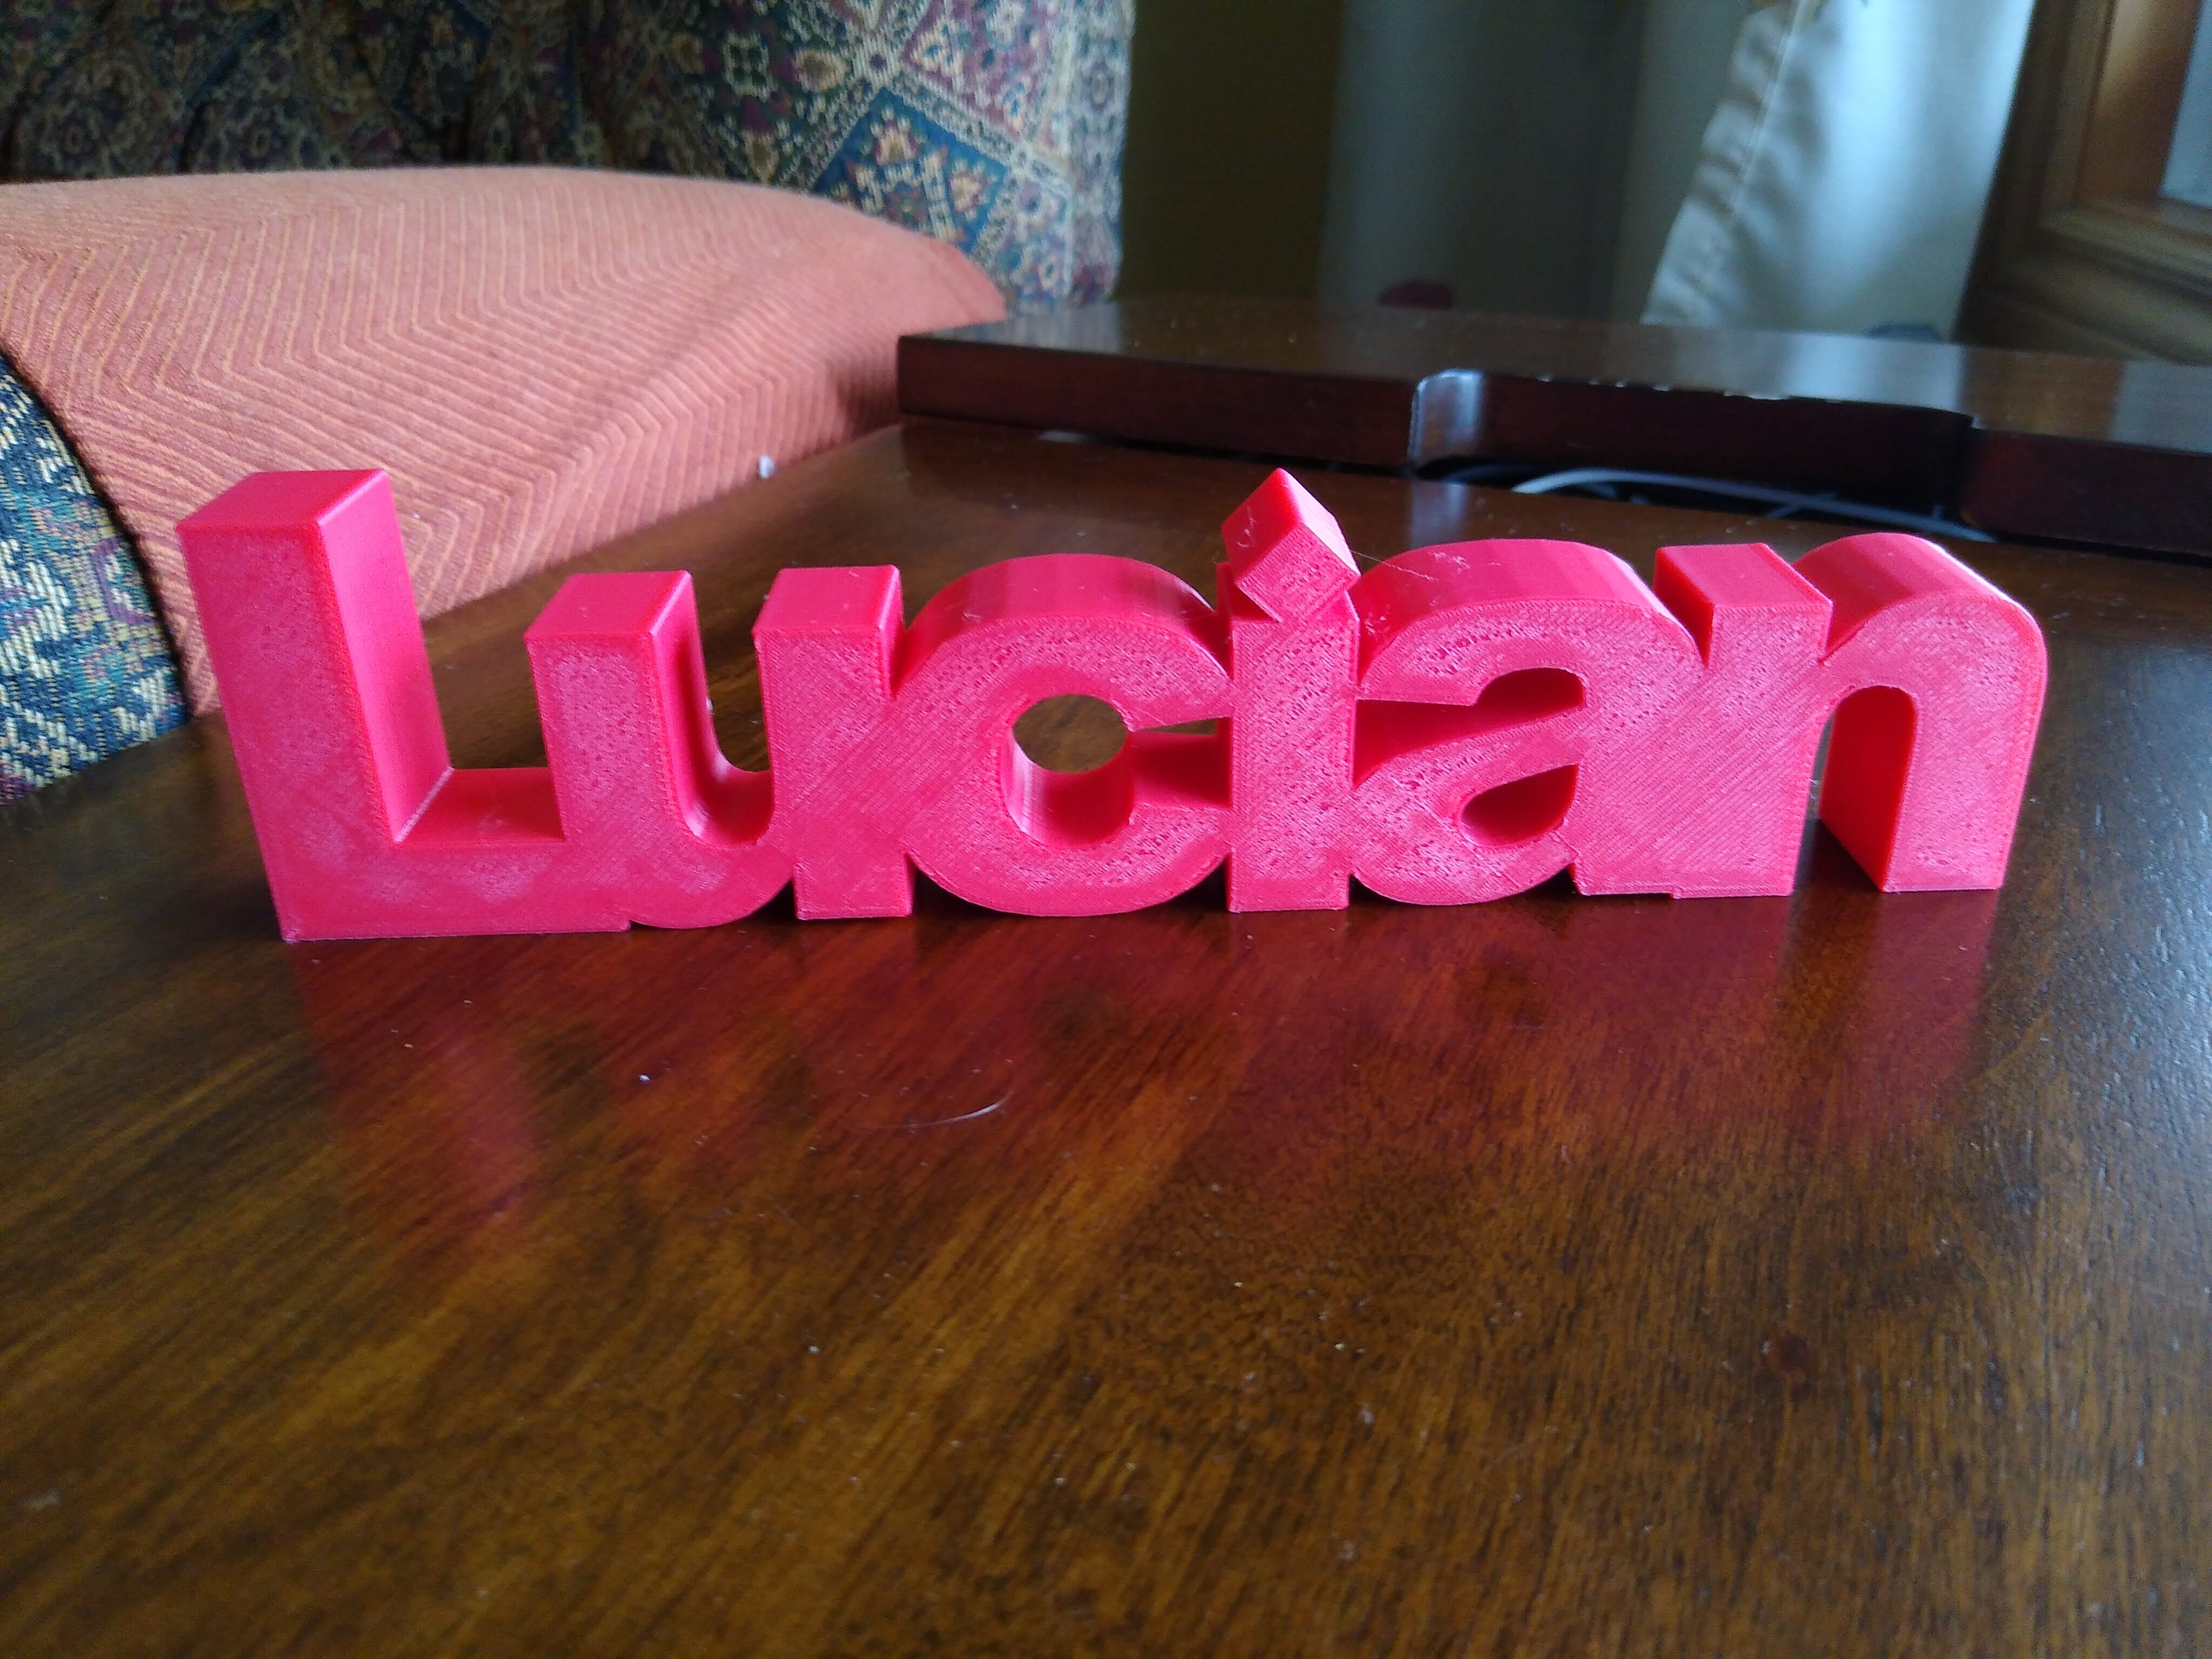 Lucian